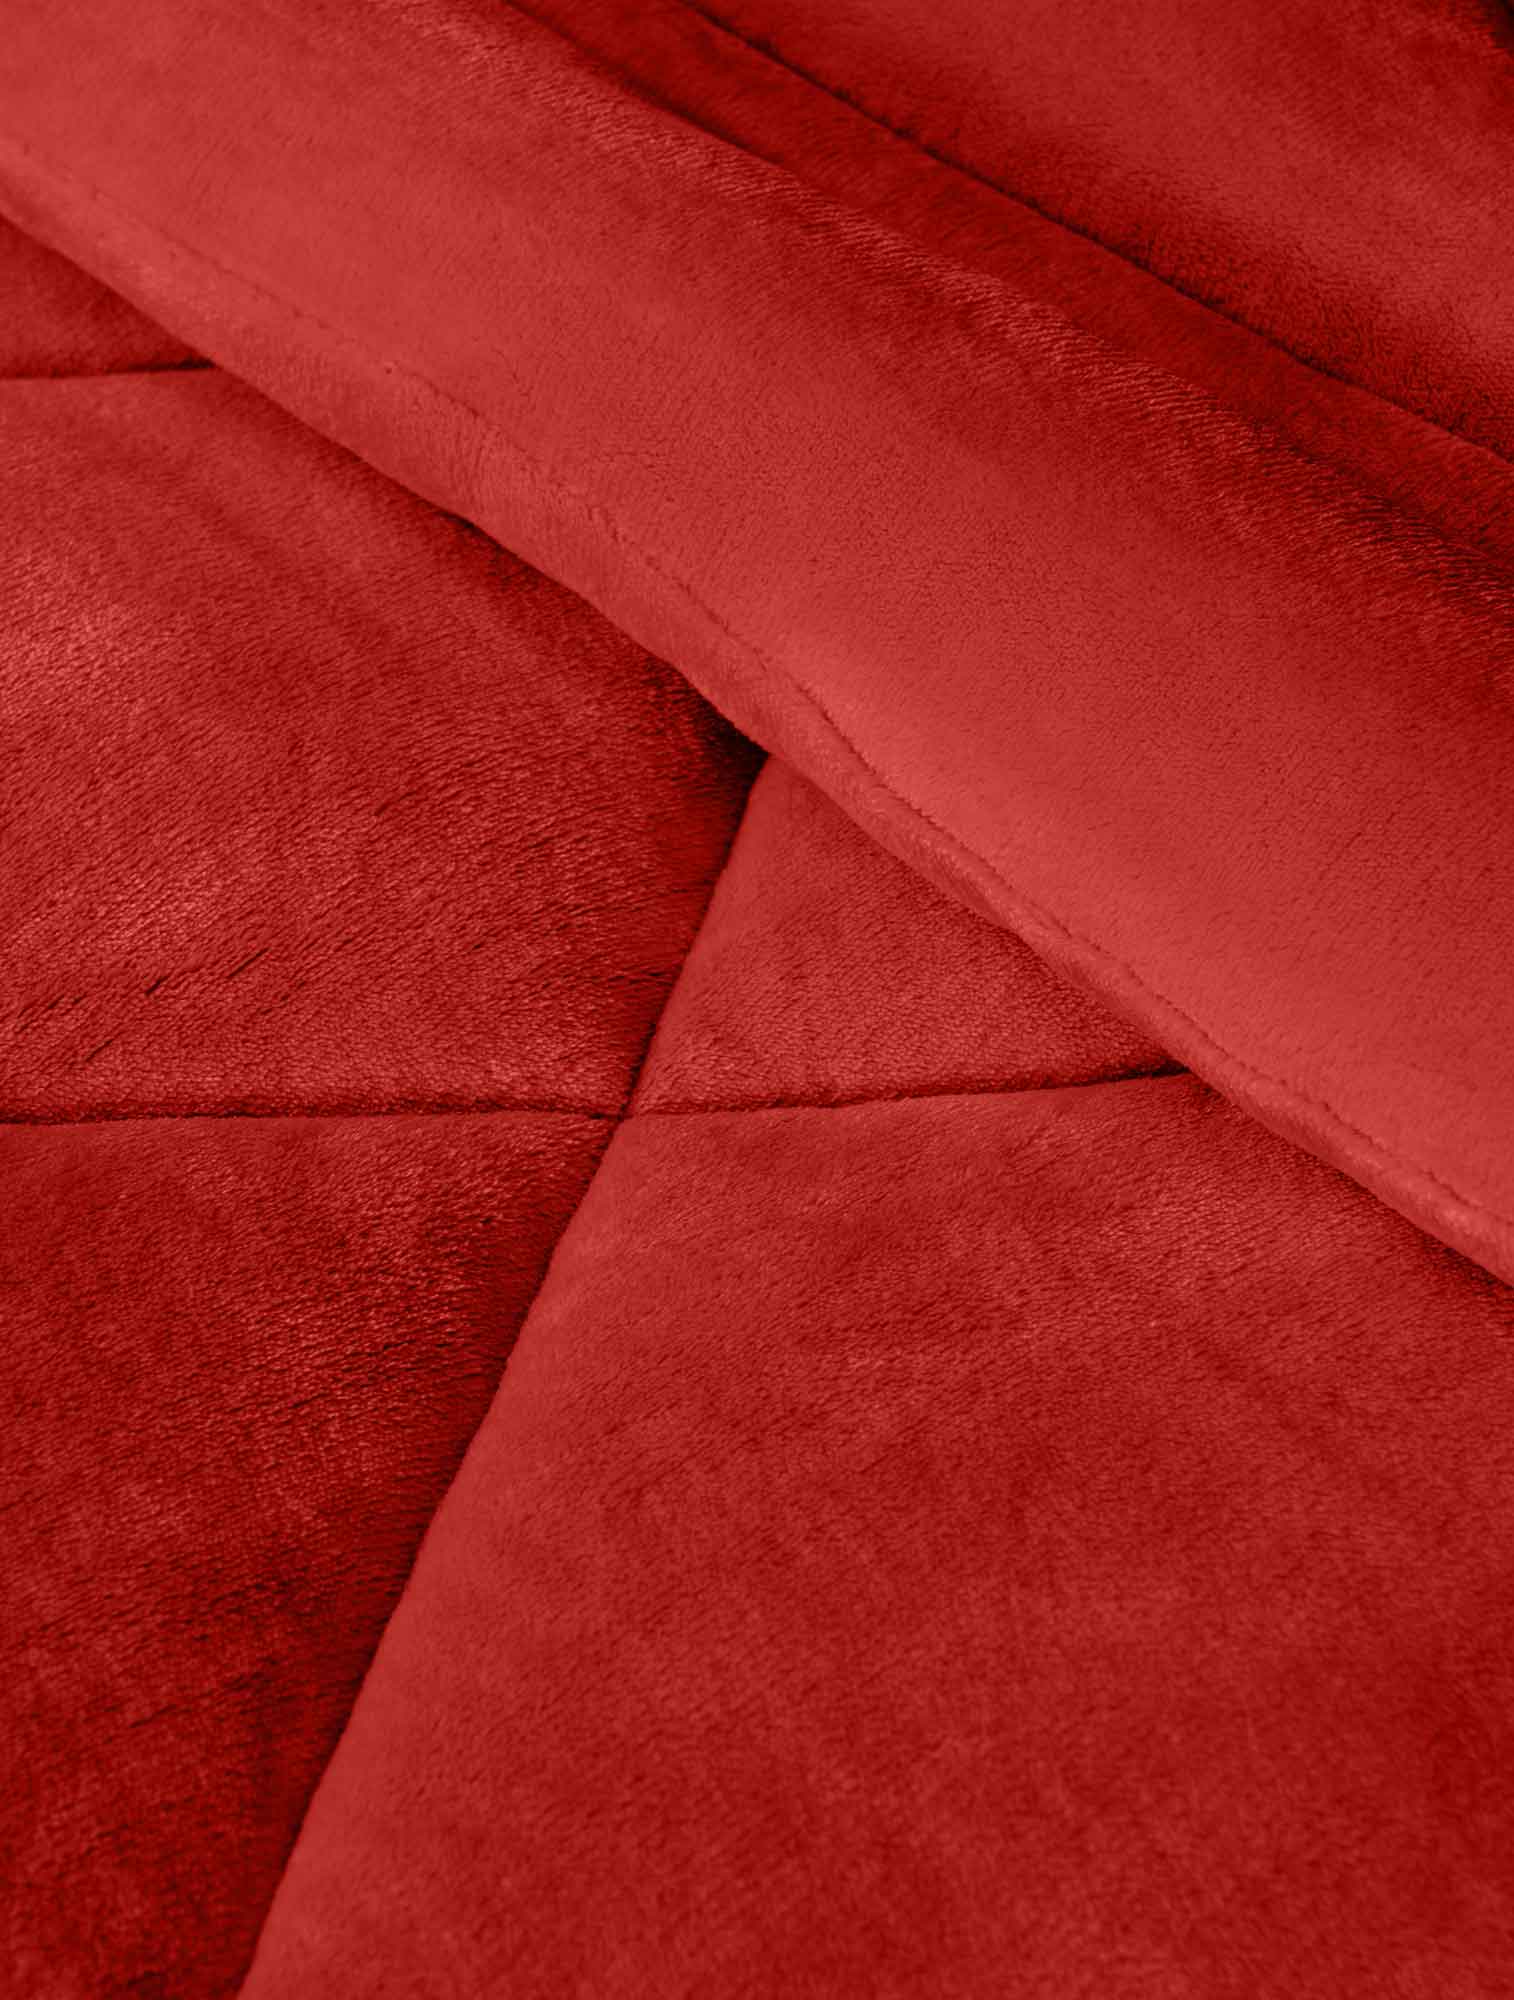 Κουβερτοπάπλωμα UNICOLORE RED από την εταιρεία Madi